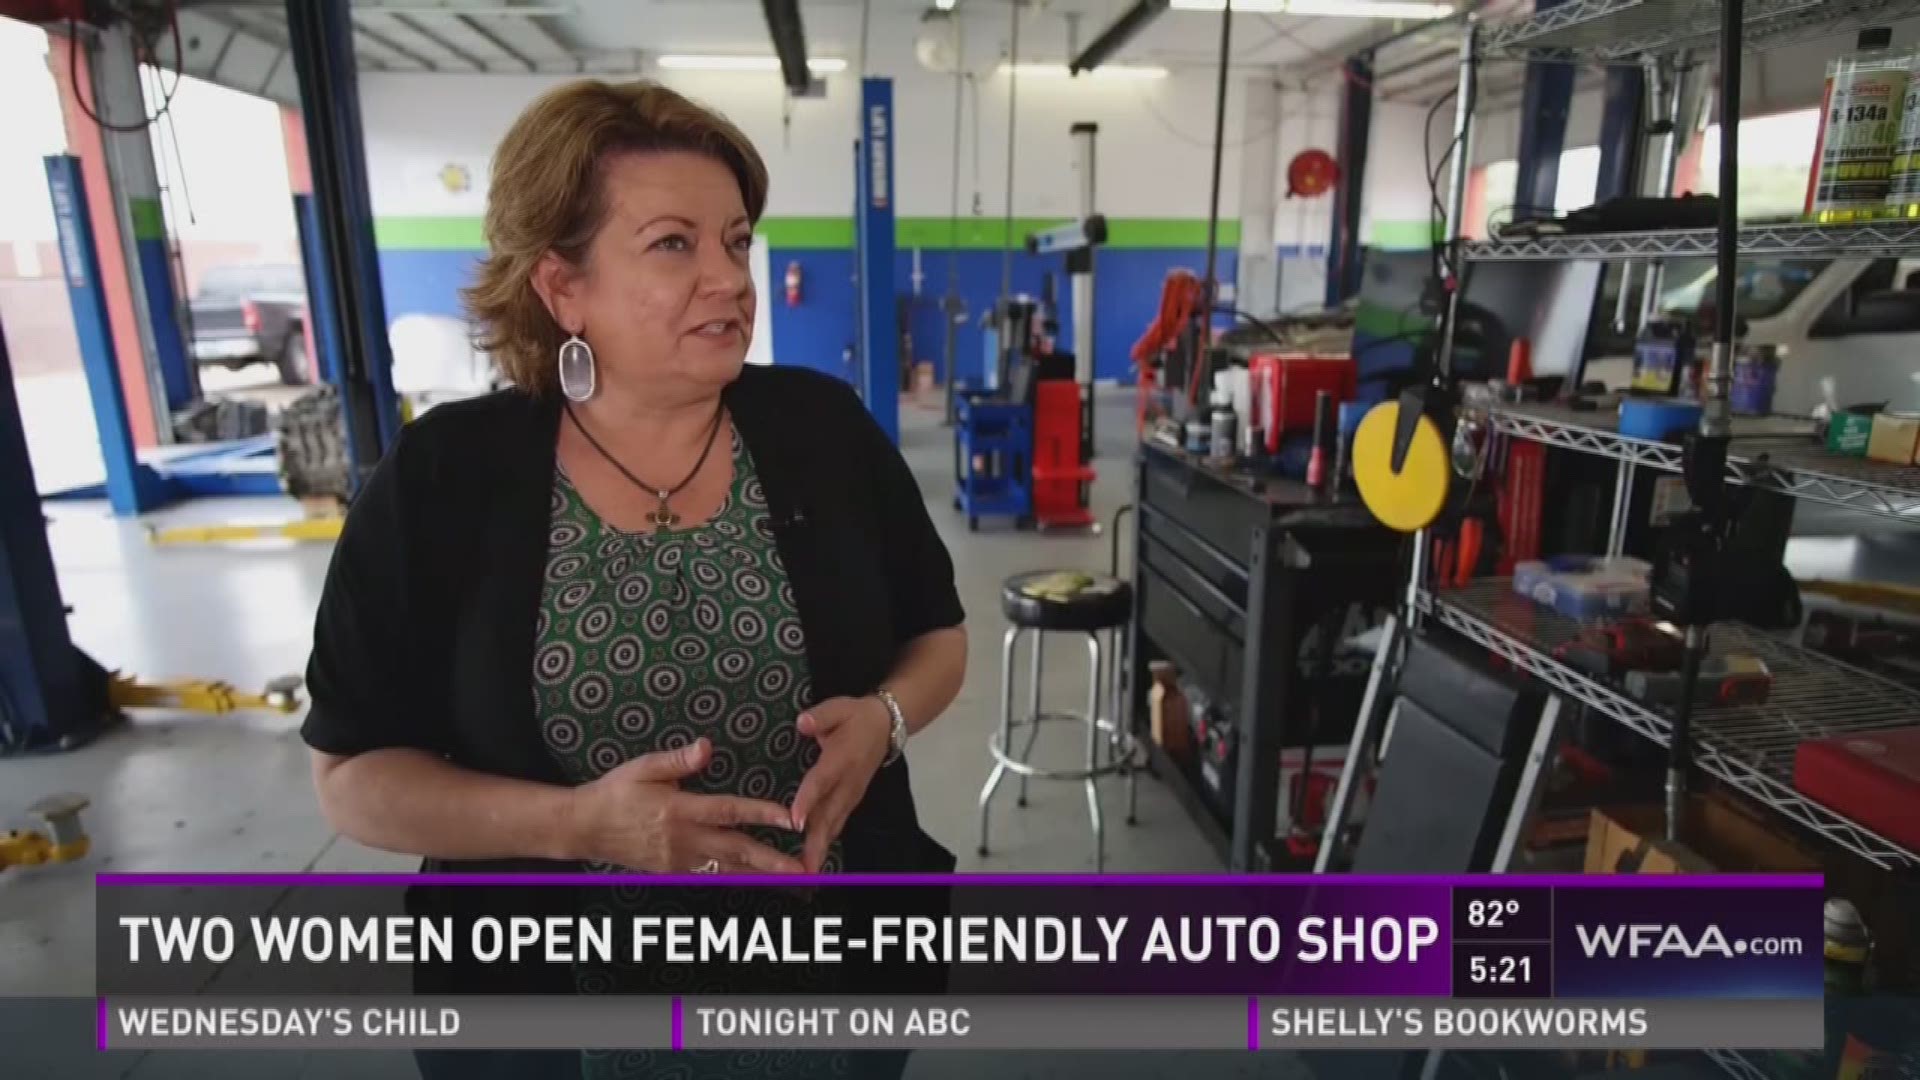 Two women open female-friendly auto shop